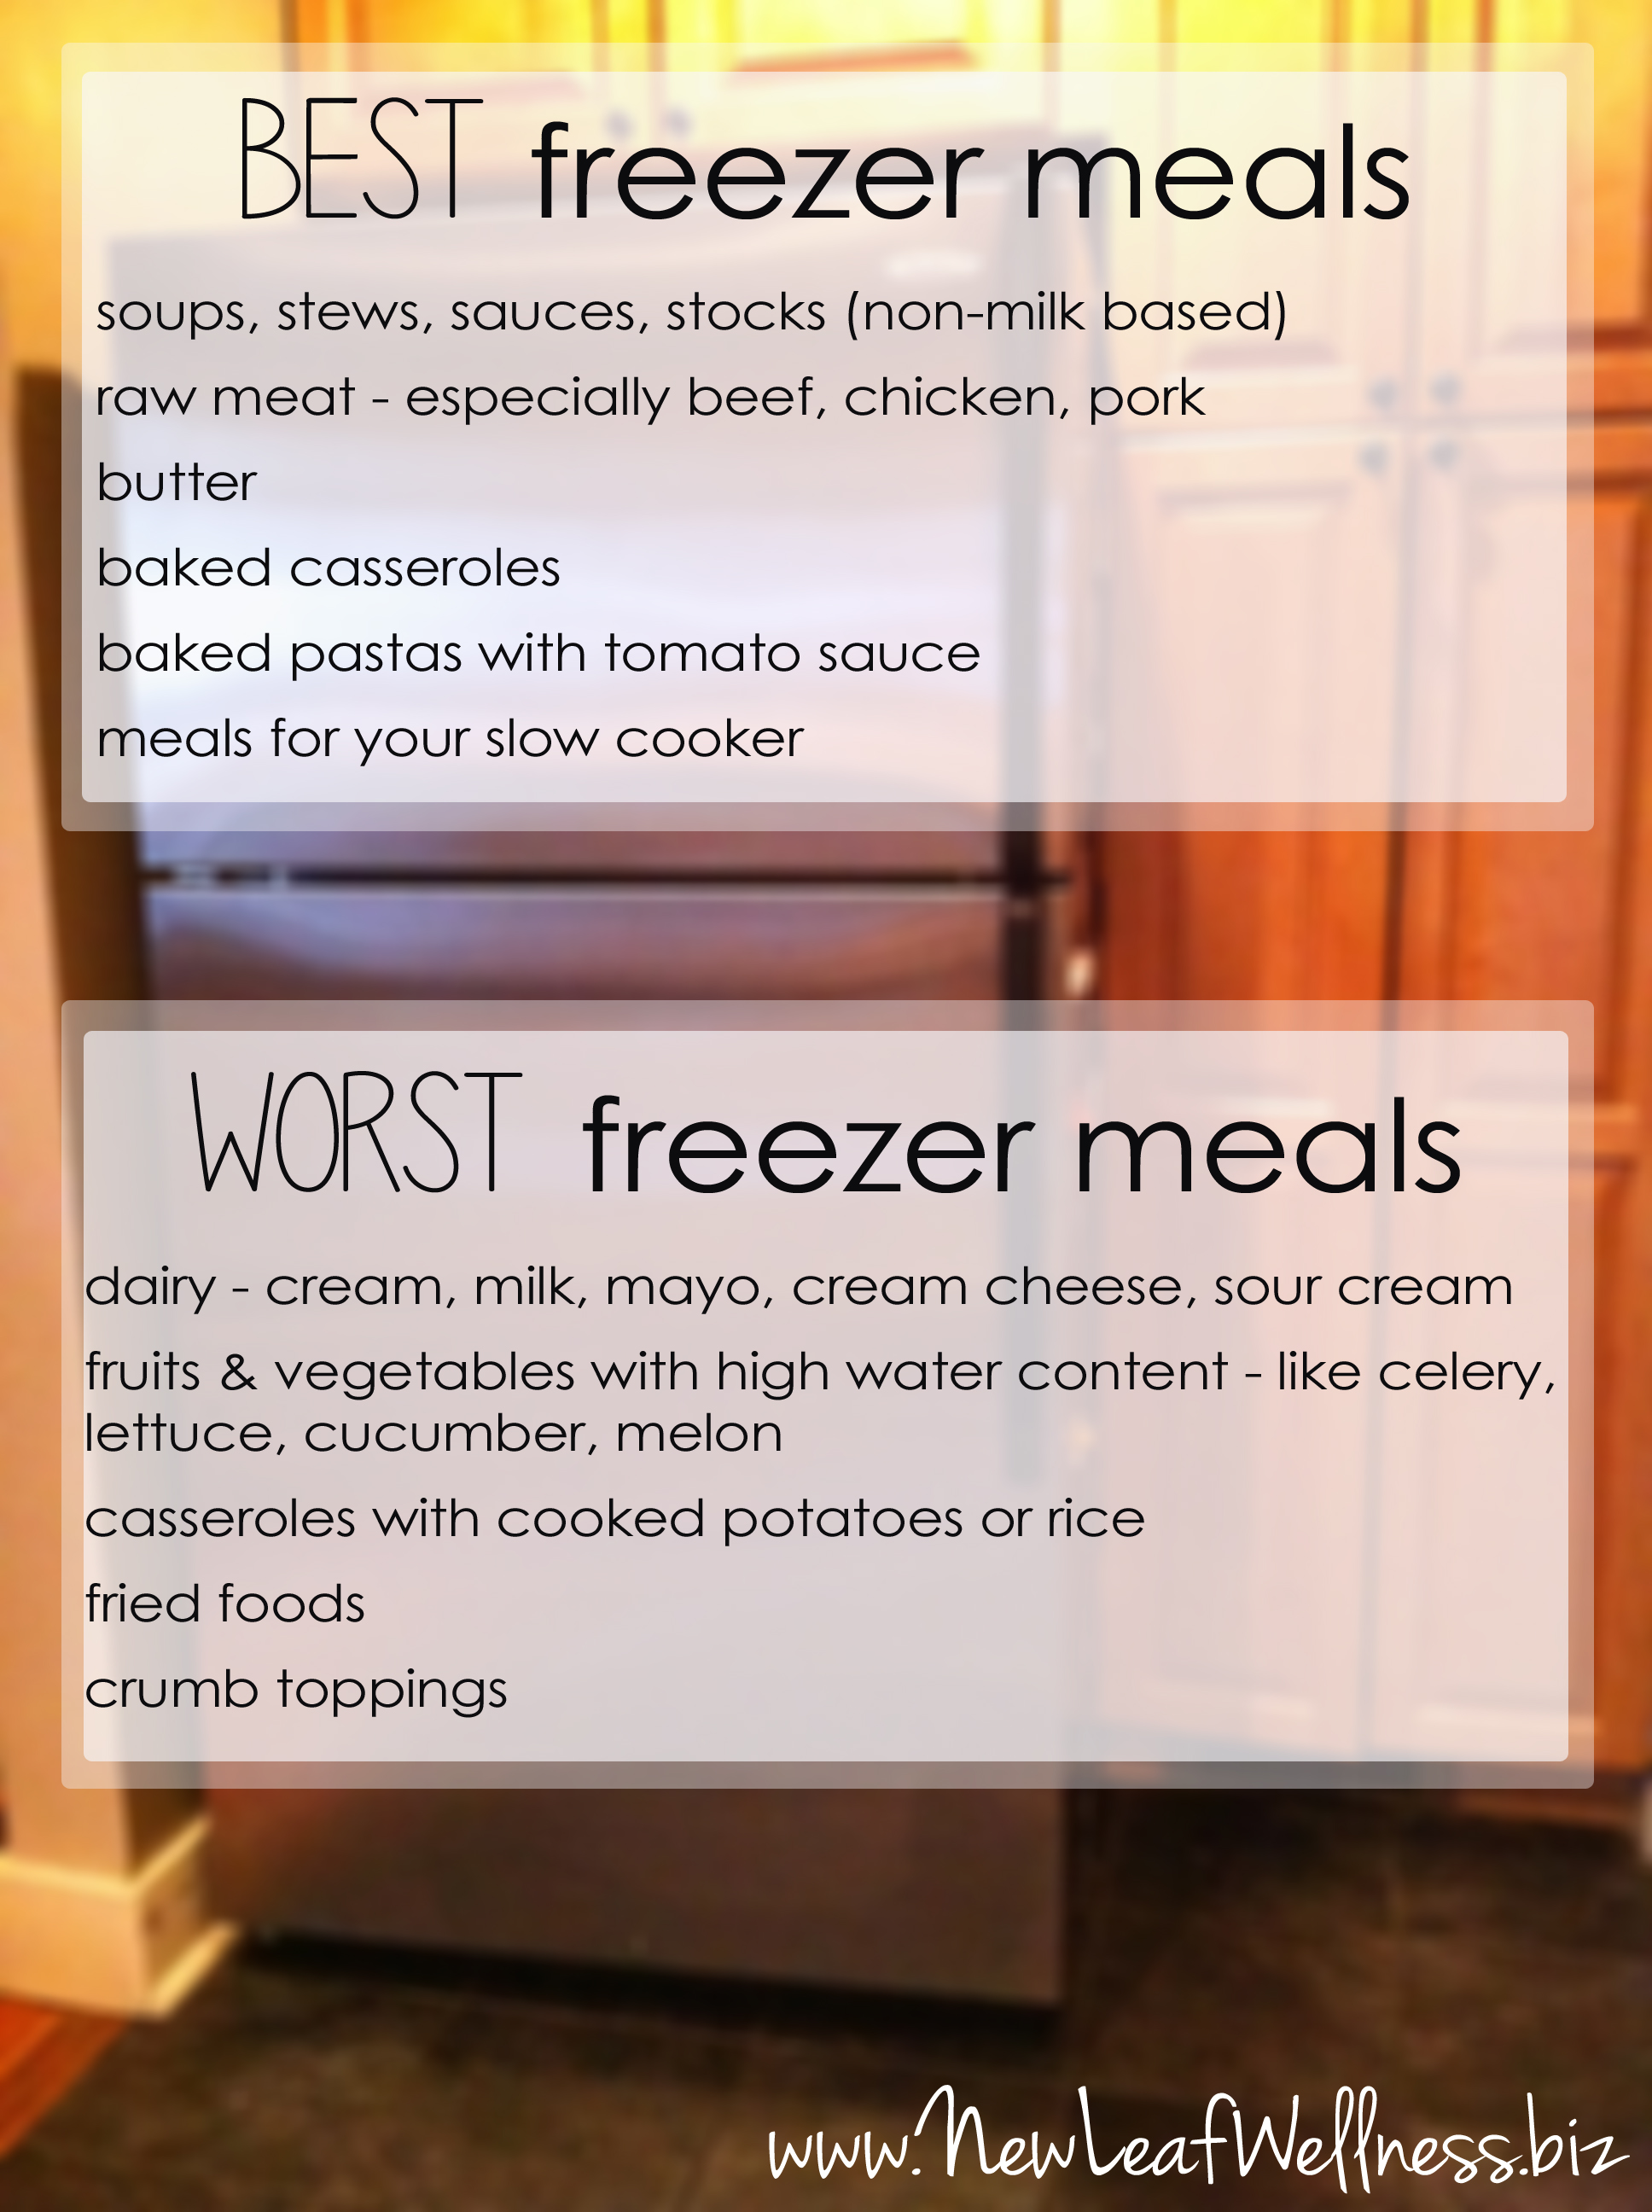 https://thefamilyfreezer.com/wp-content/uploads/2013/08/best-and-worst-freezer-meals-copy.jpg